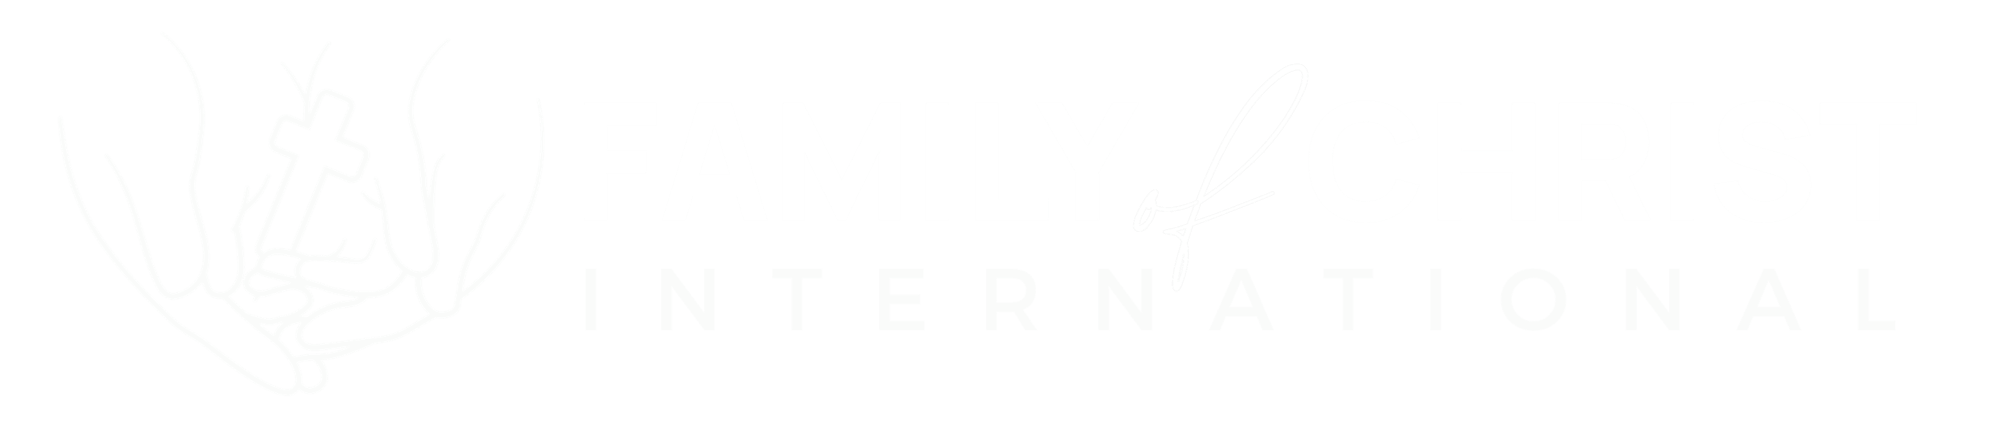 Family of Christ International - White Logo